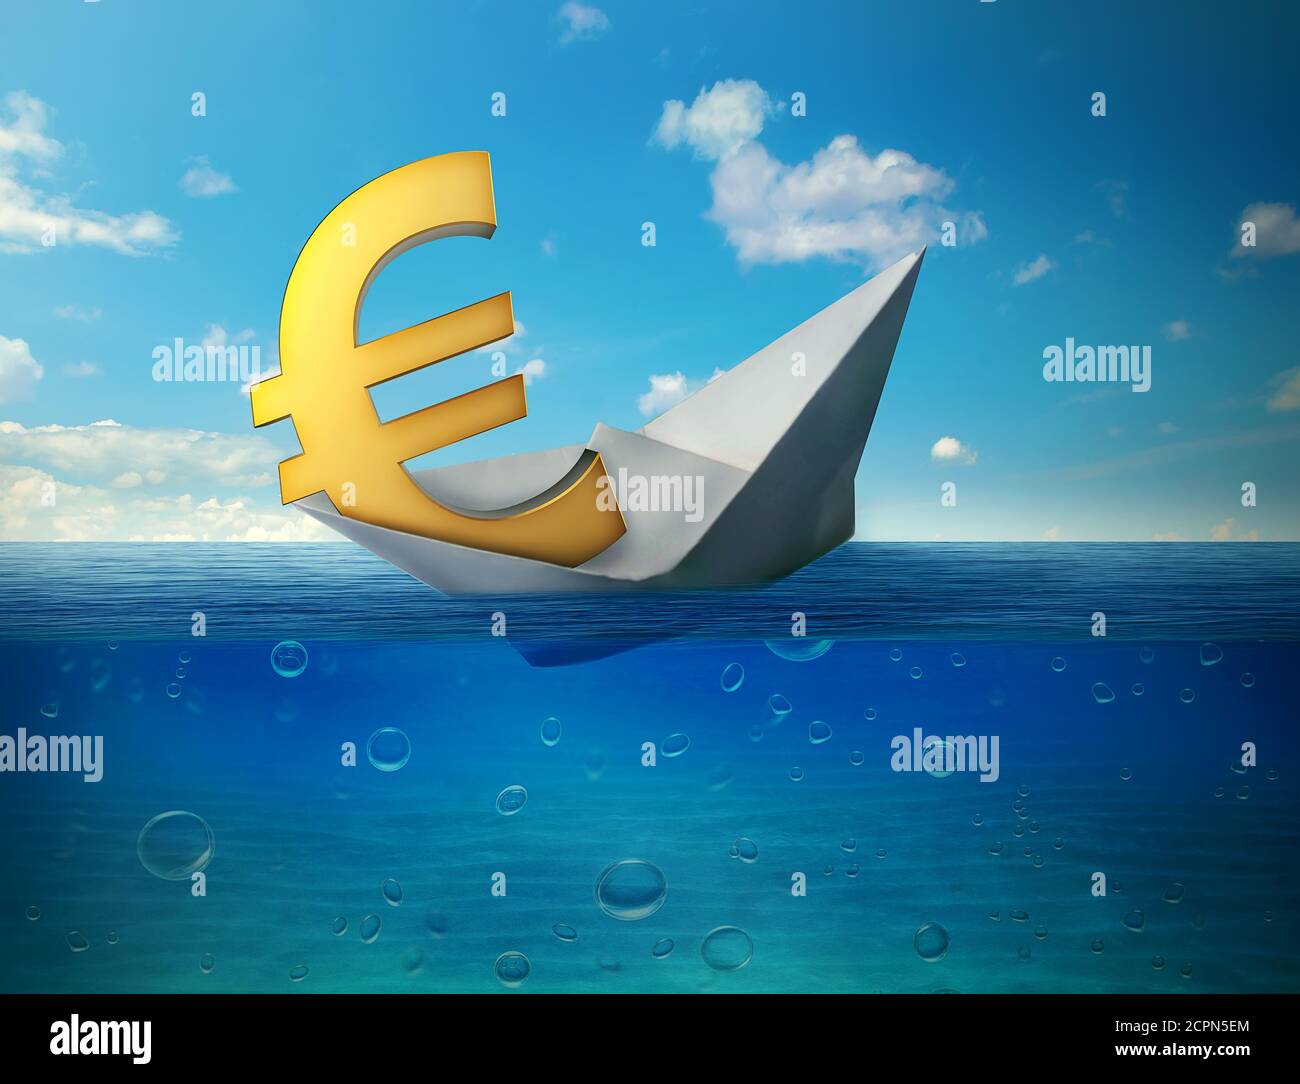 Sinkende Euro-Währungssymbol mit Papierboot schwimmt im Ozean. Schlechte Finanzen Euro-Zone Katastrophe Zusammenbruch Konzept Metapher Stockfoto